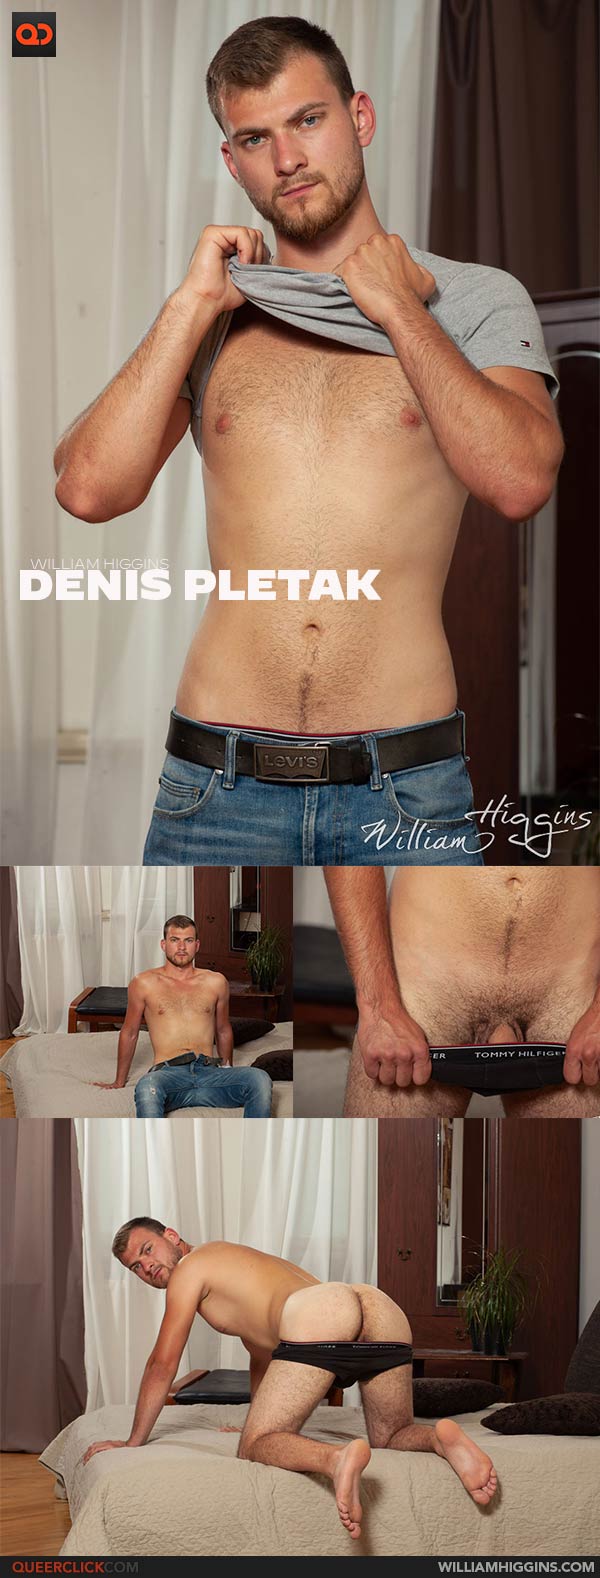 William Higgins: Denis Pletak